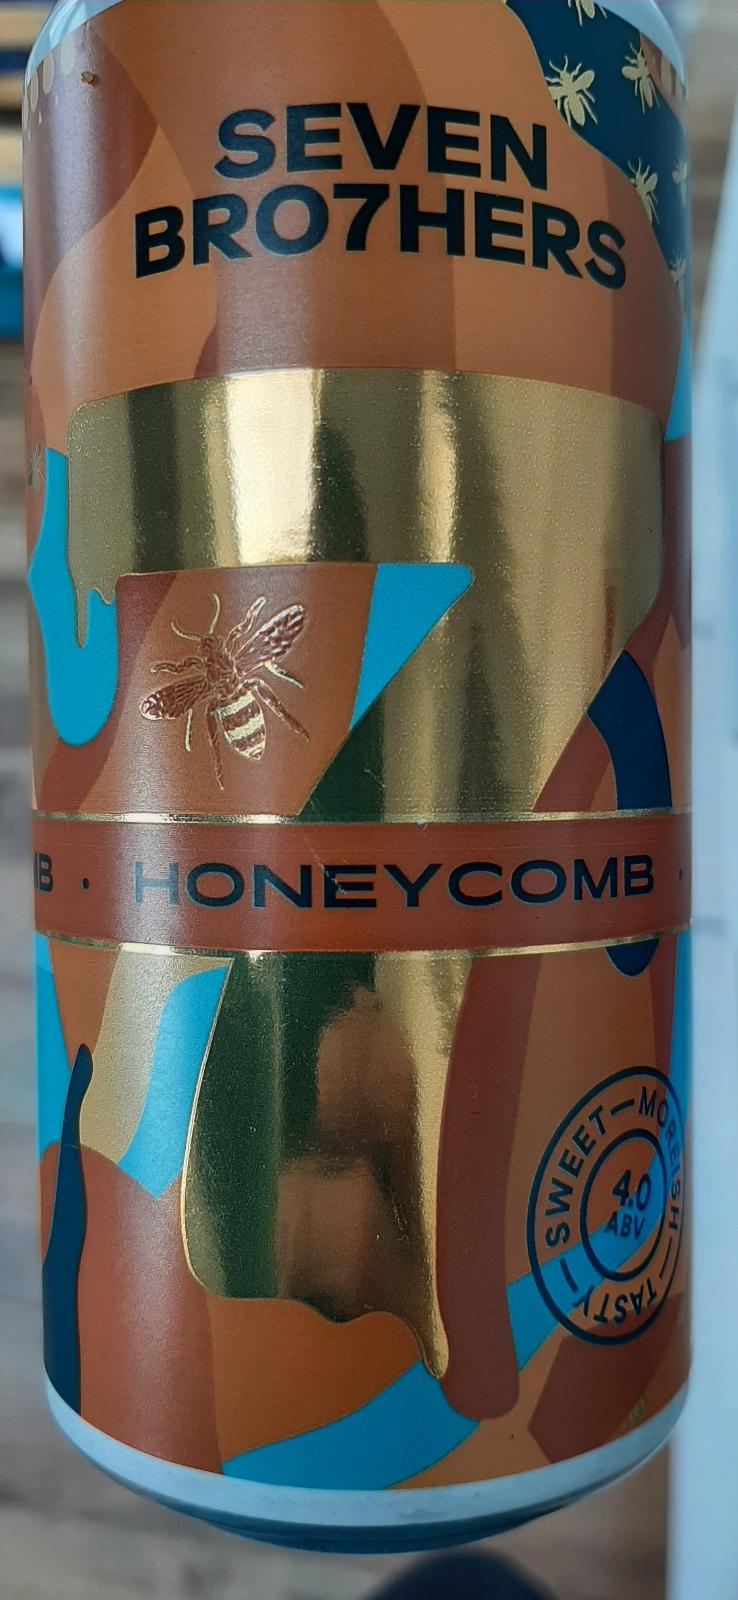 Honeycomb Pale Ale